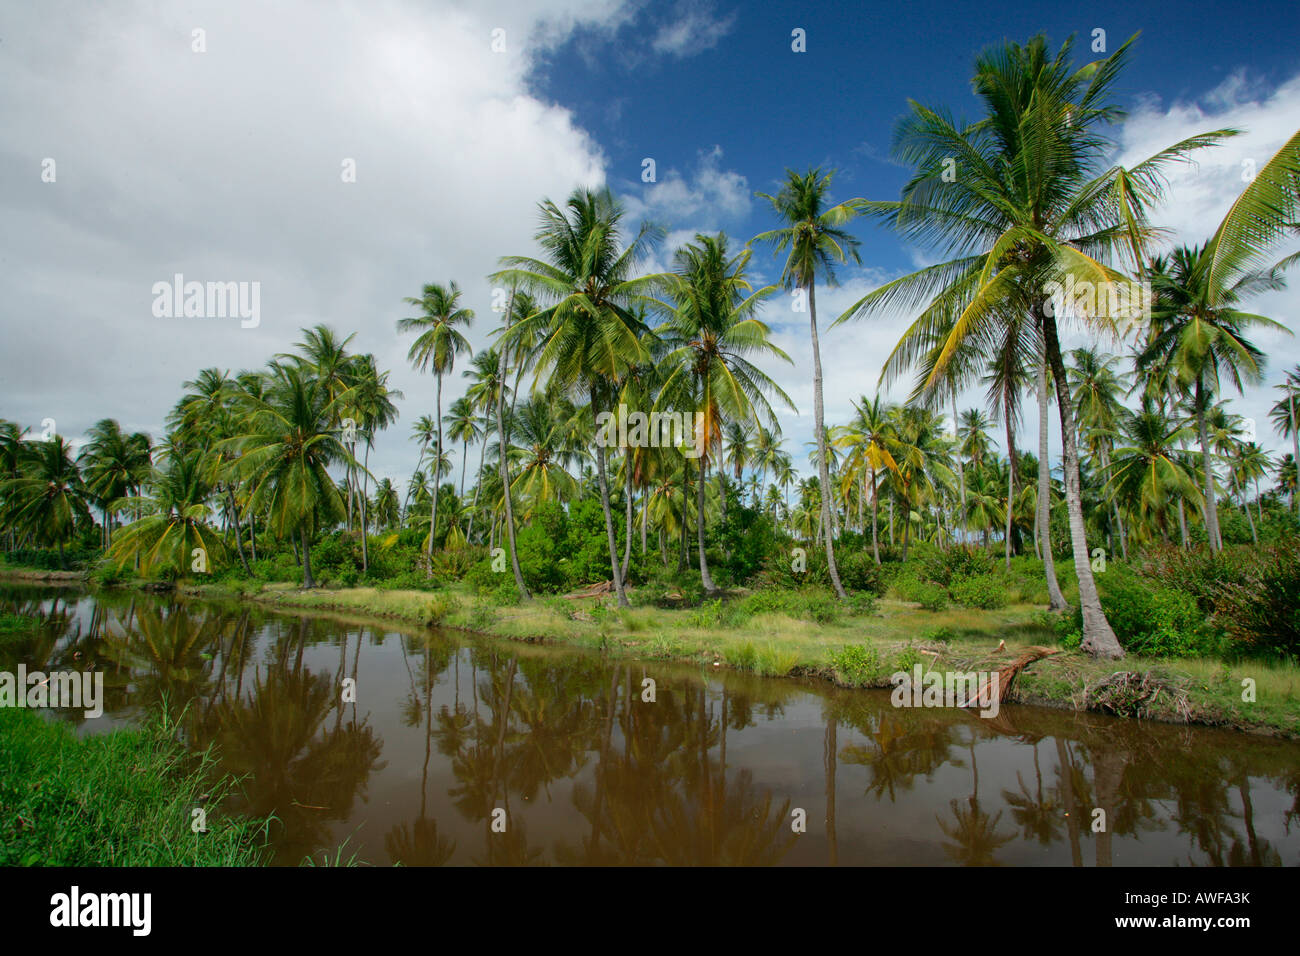 Plantation de cocotiers, palmiers, cocotiers, traitement de Georgetown, Guyana, en Amérique du Sud Banque D'Images